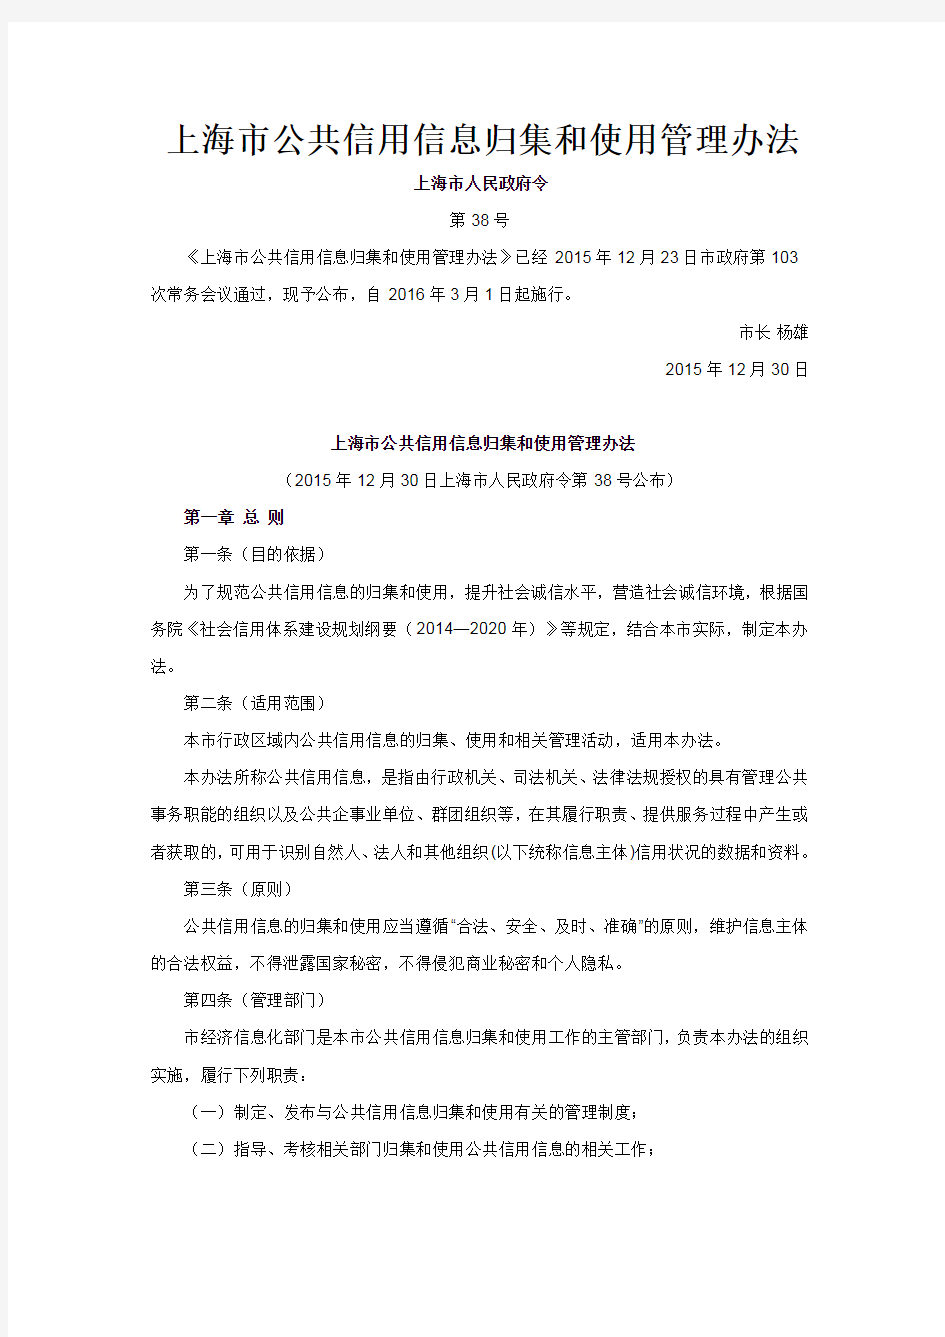 2016版_上海市公共信用信息归集和使用管理办法